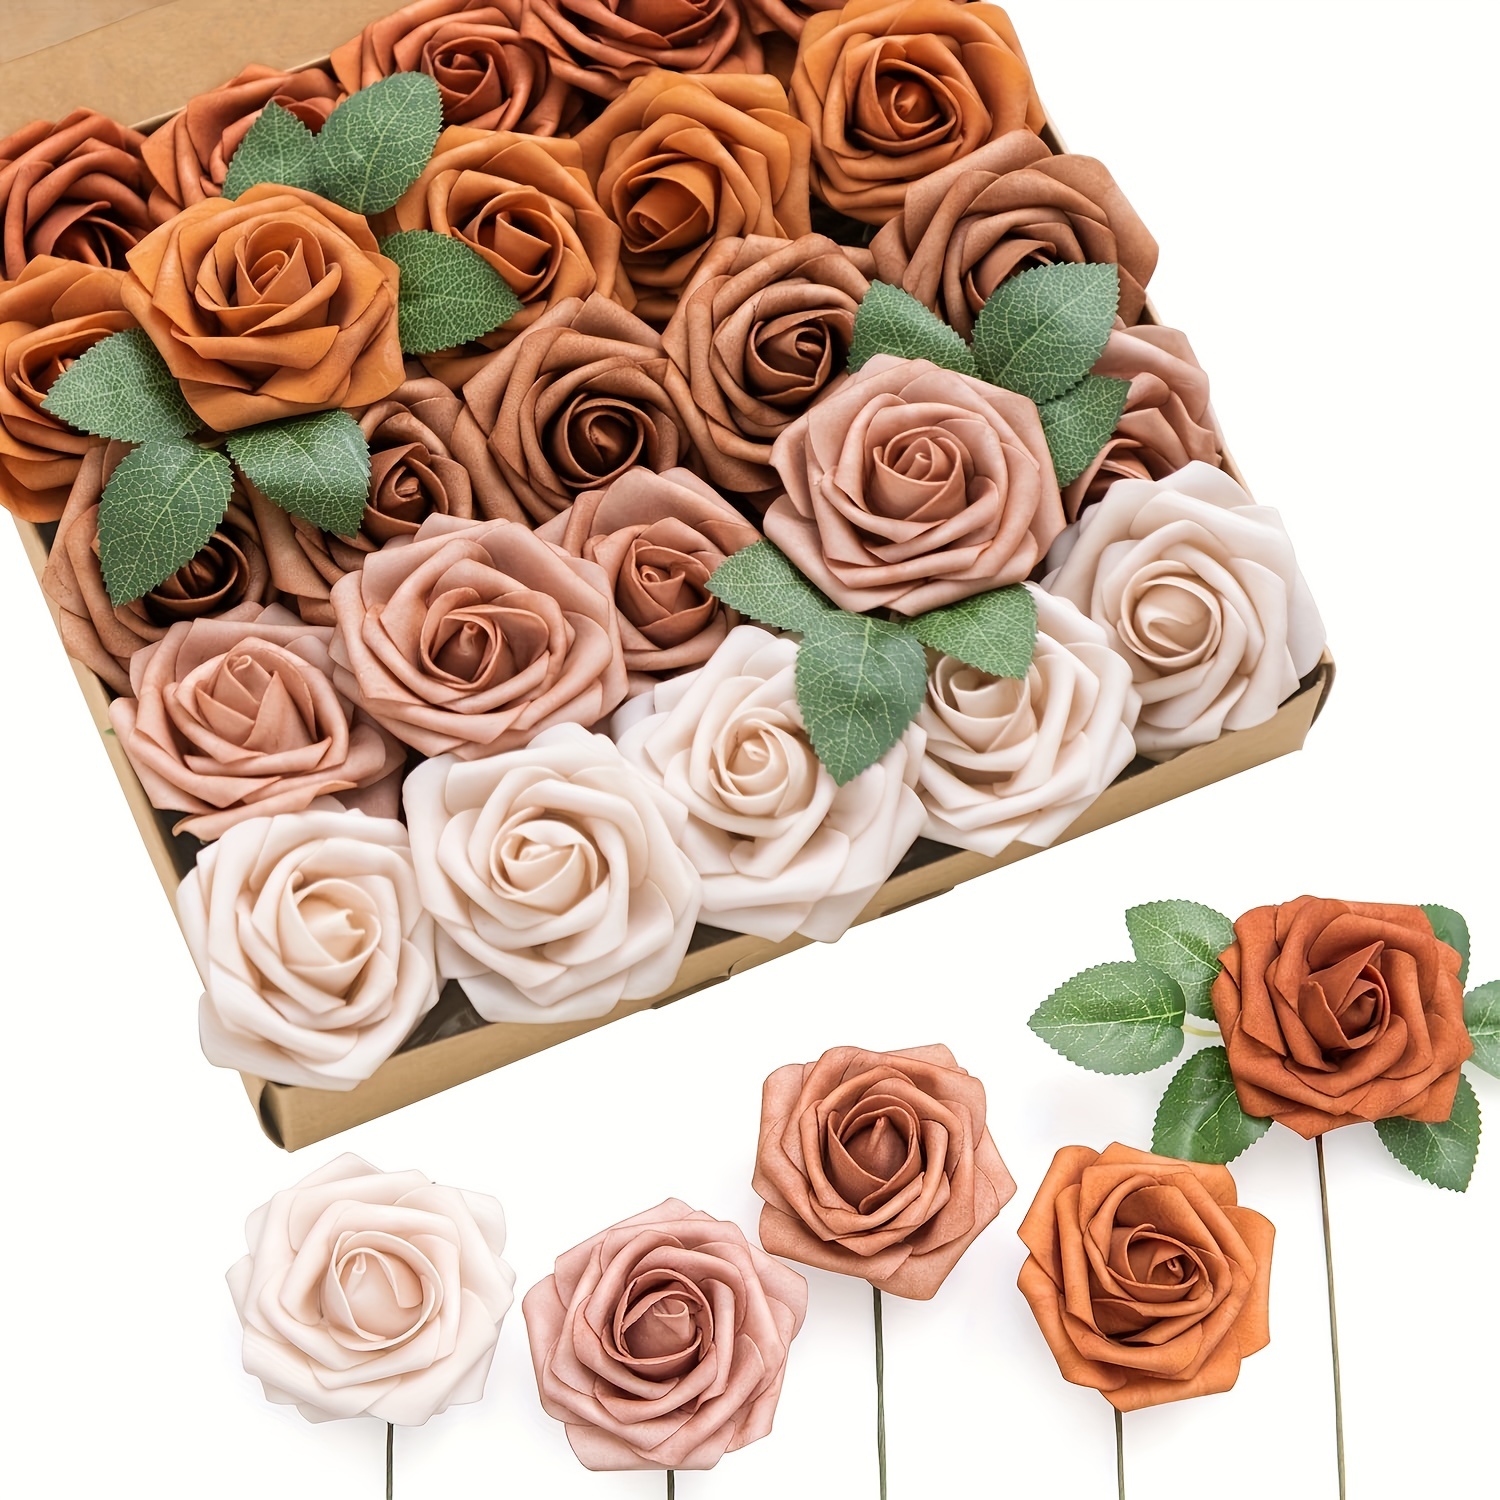 Mini rose and eucalyptus wedding bouquet bouquet boutonniere set